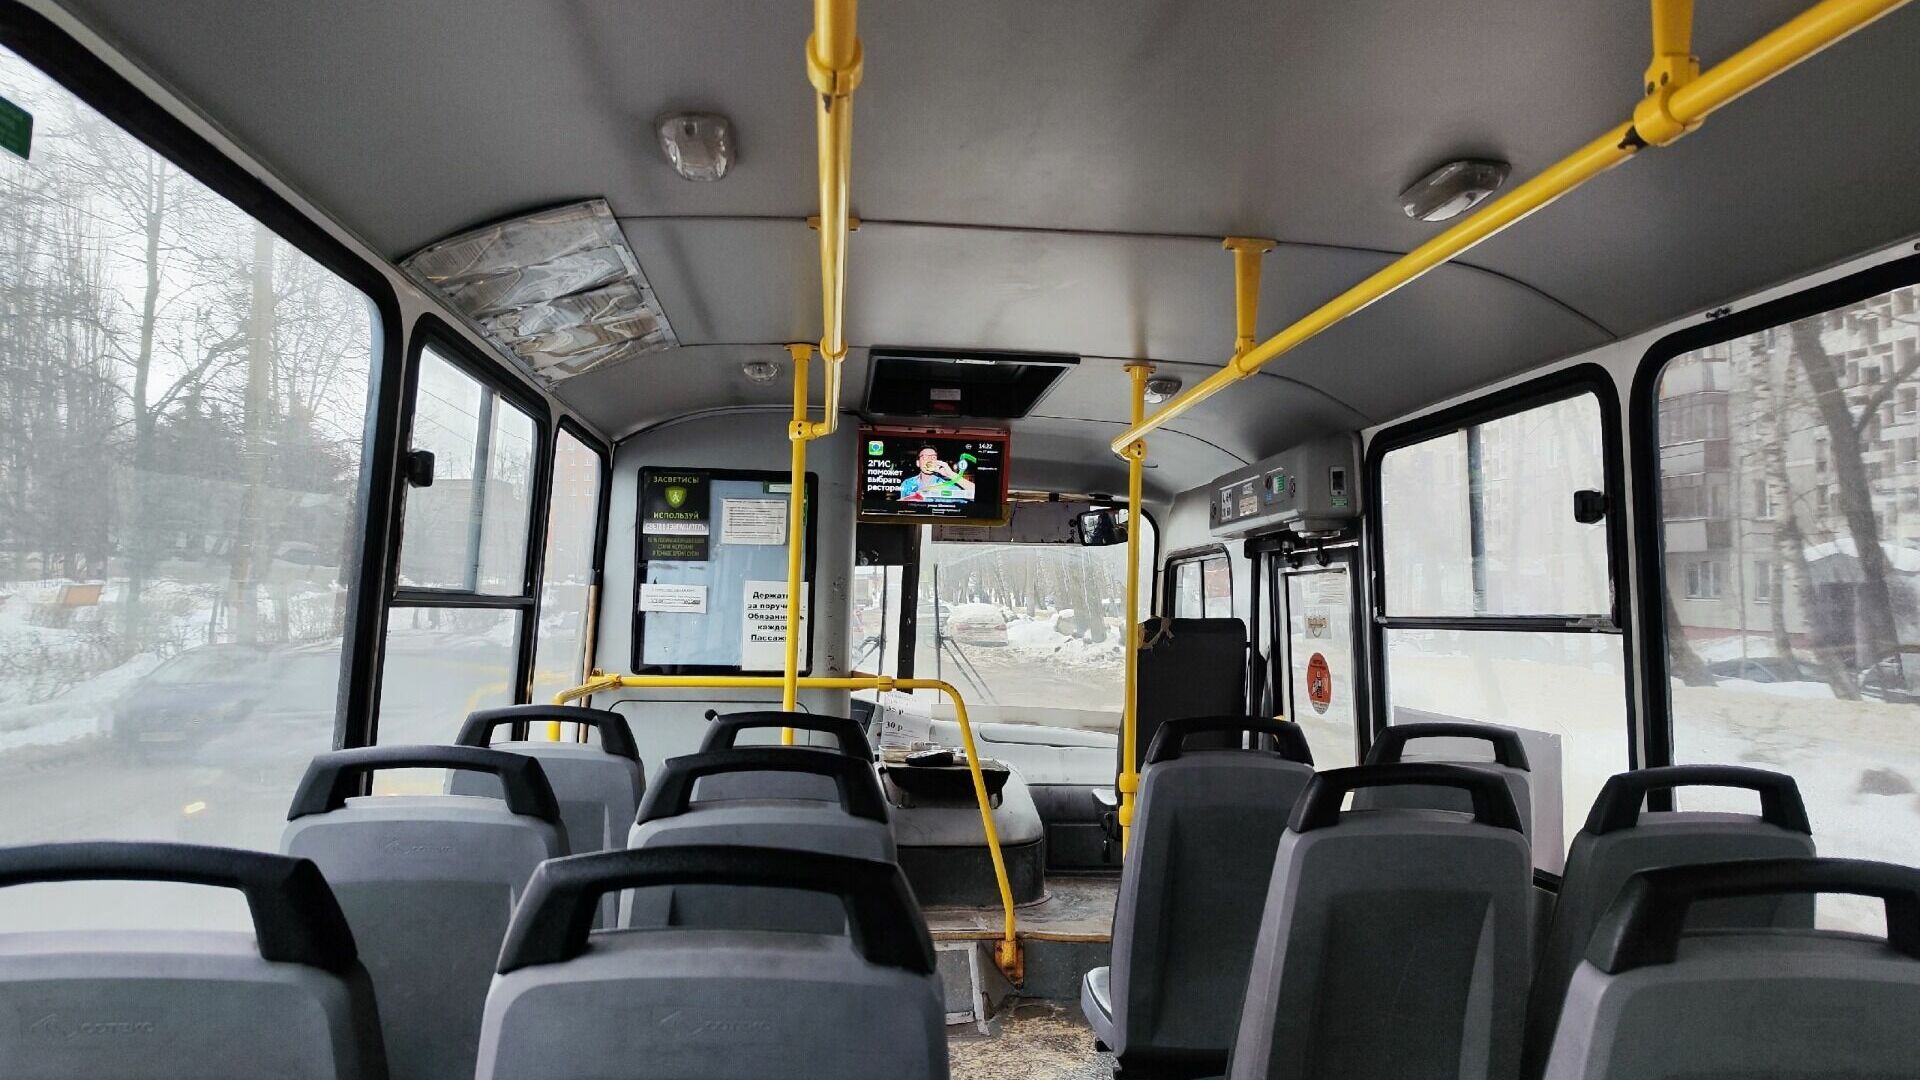 Зарядки для гаджетов появились в автобусах А-90 в Нижнем Новгороде